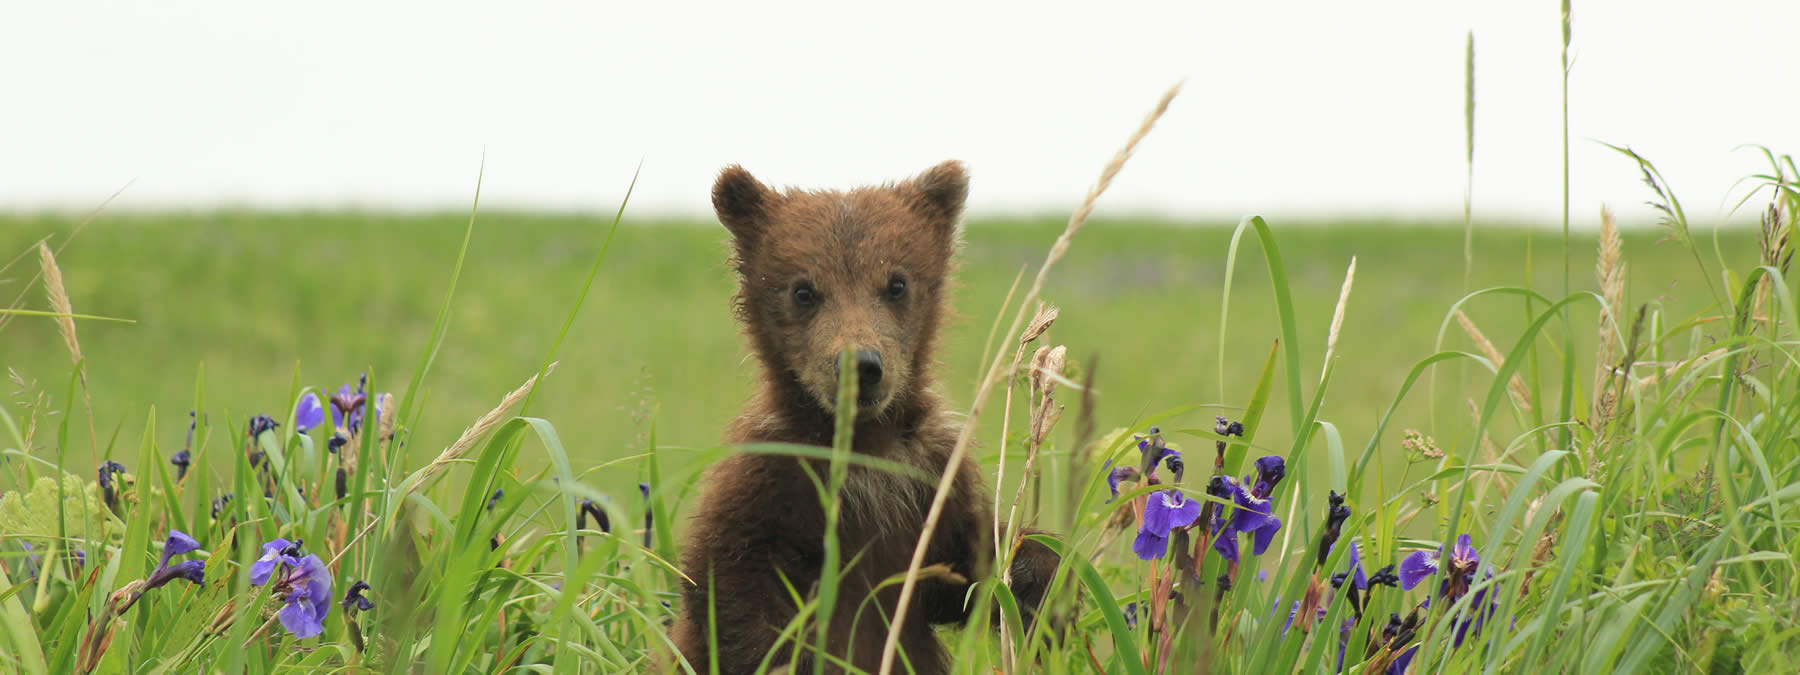 Alaska Bear Cub in the Iris